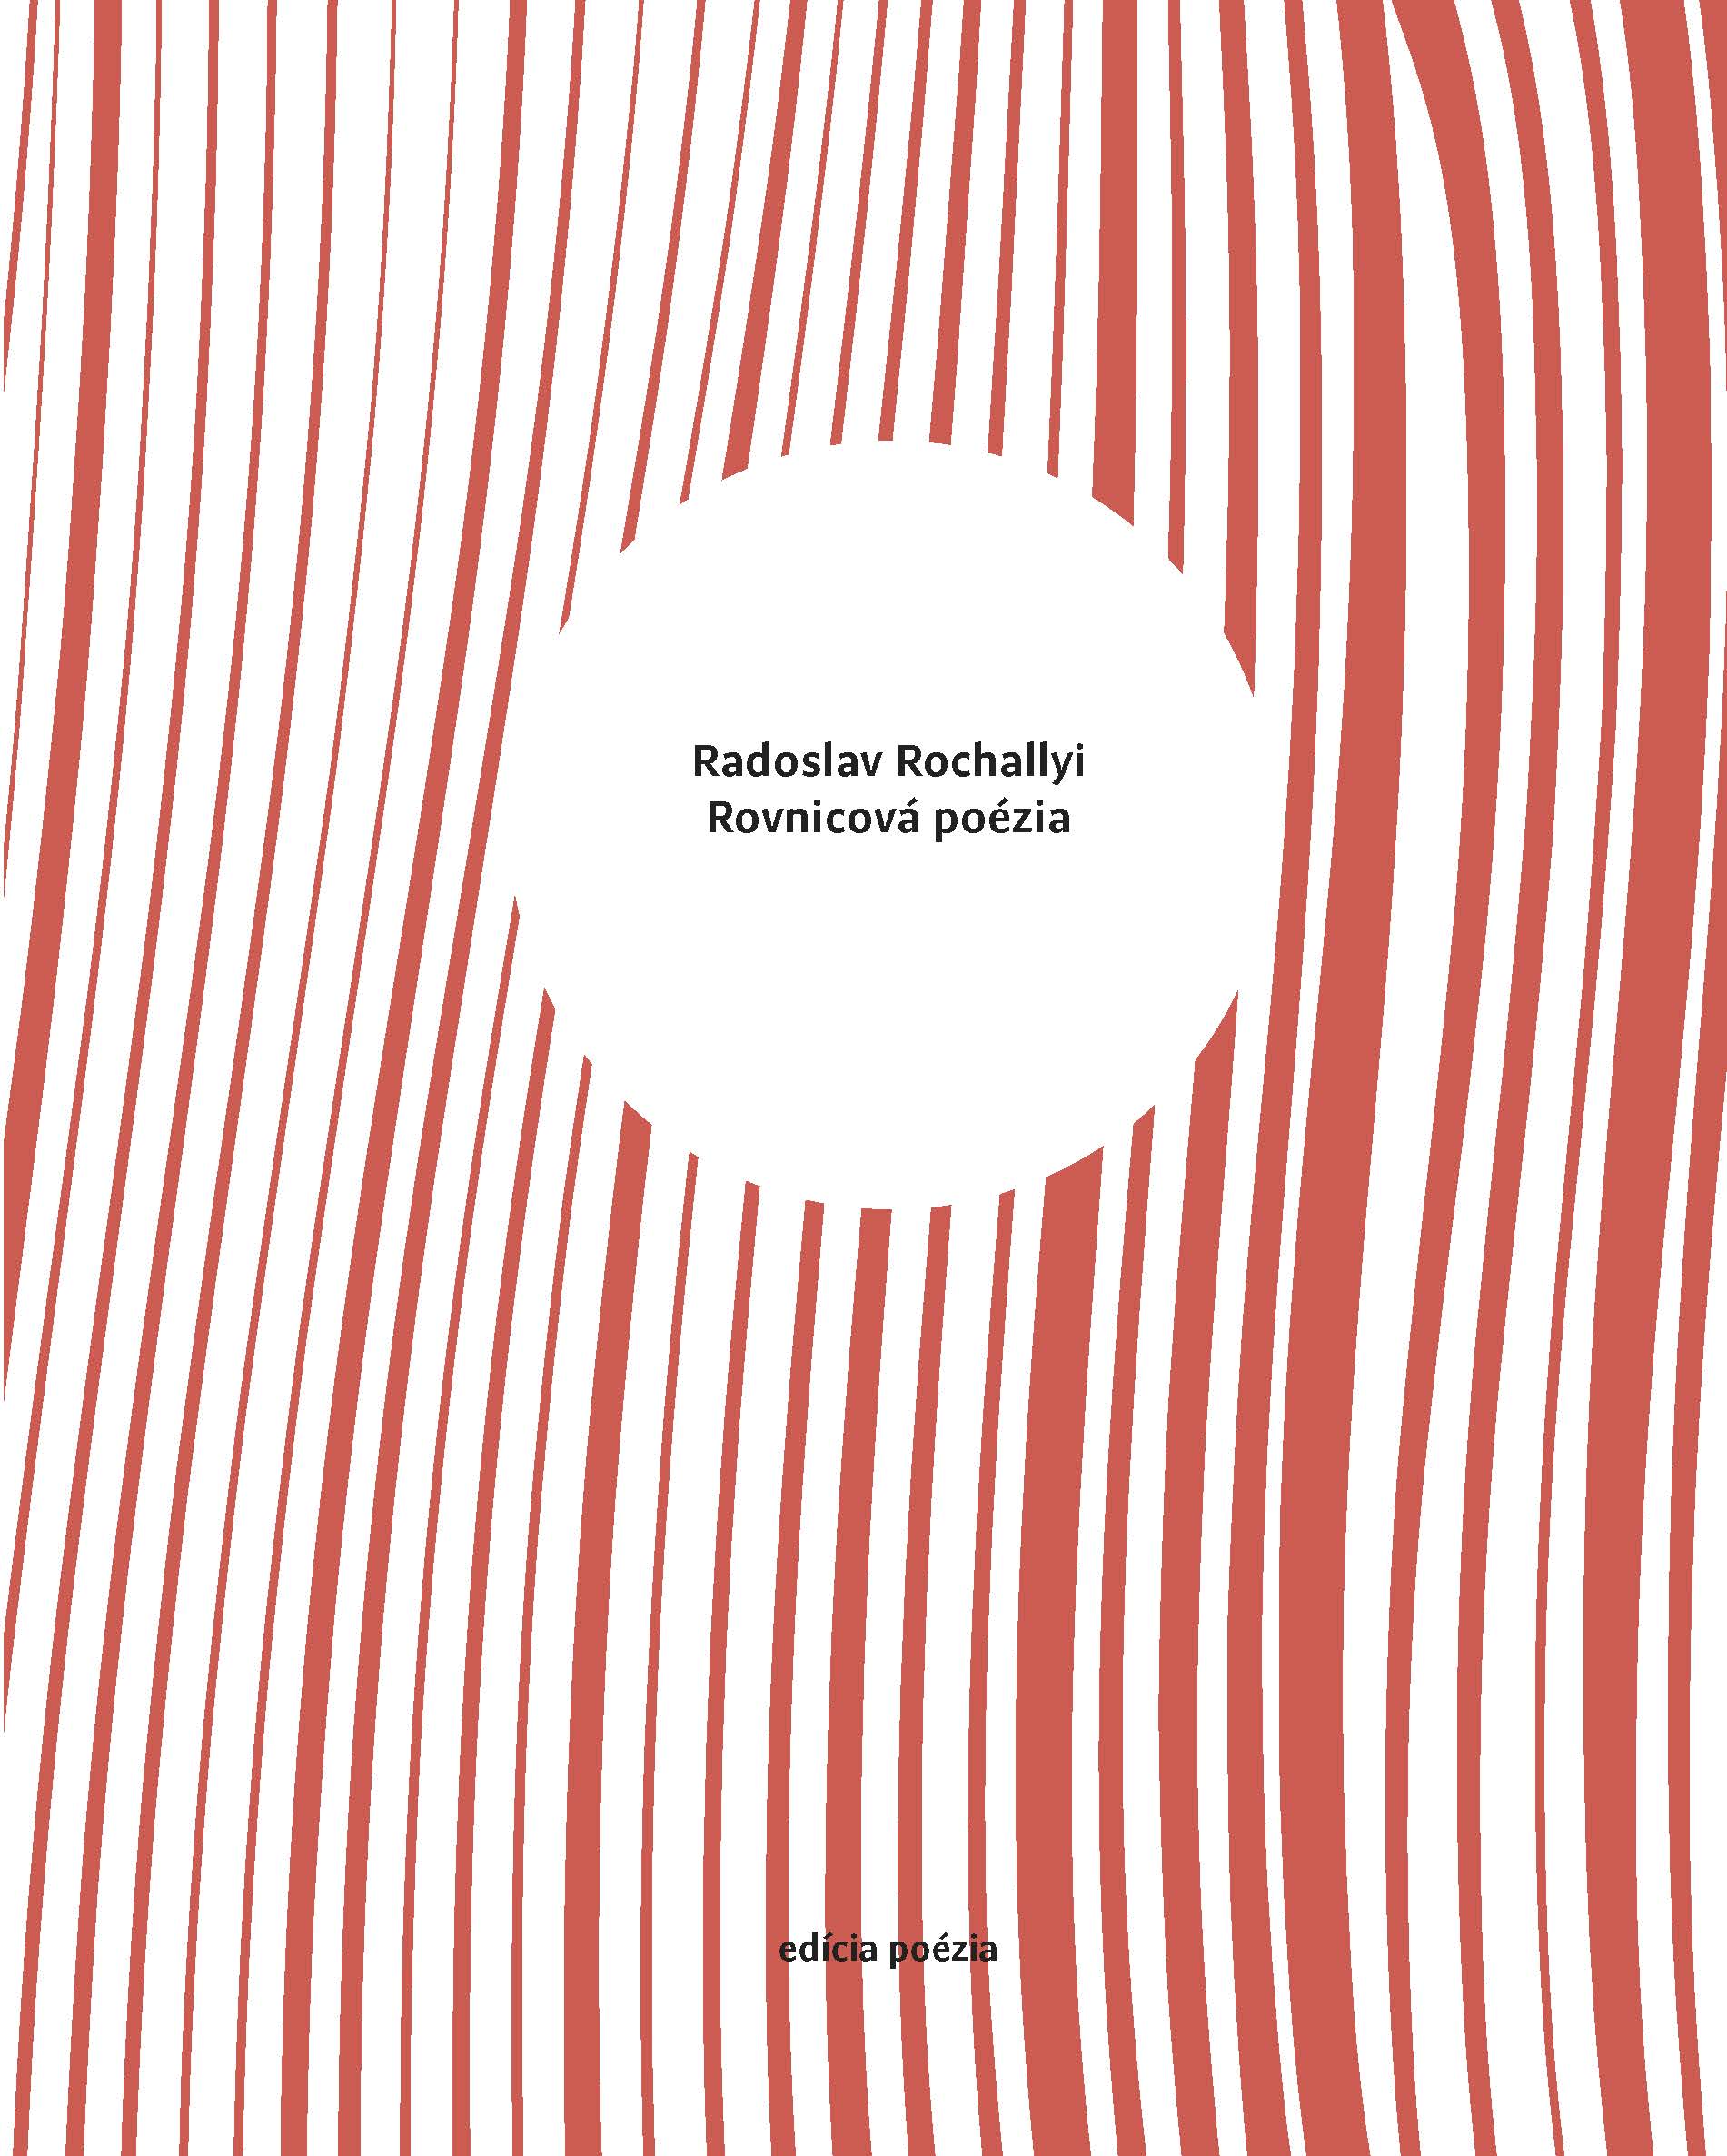 Radoslav Rochallyi – Rovnicová poézai